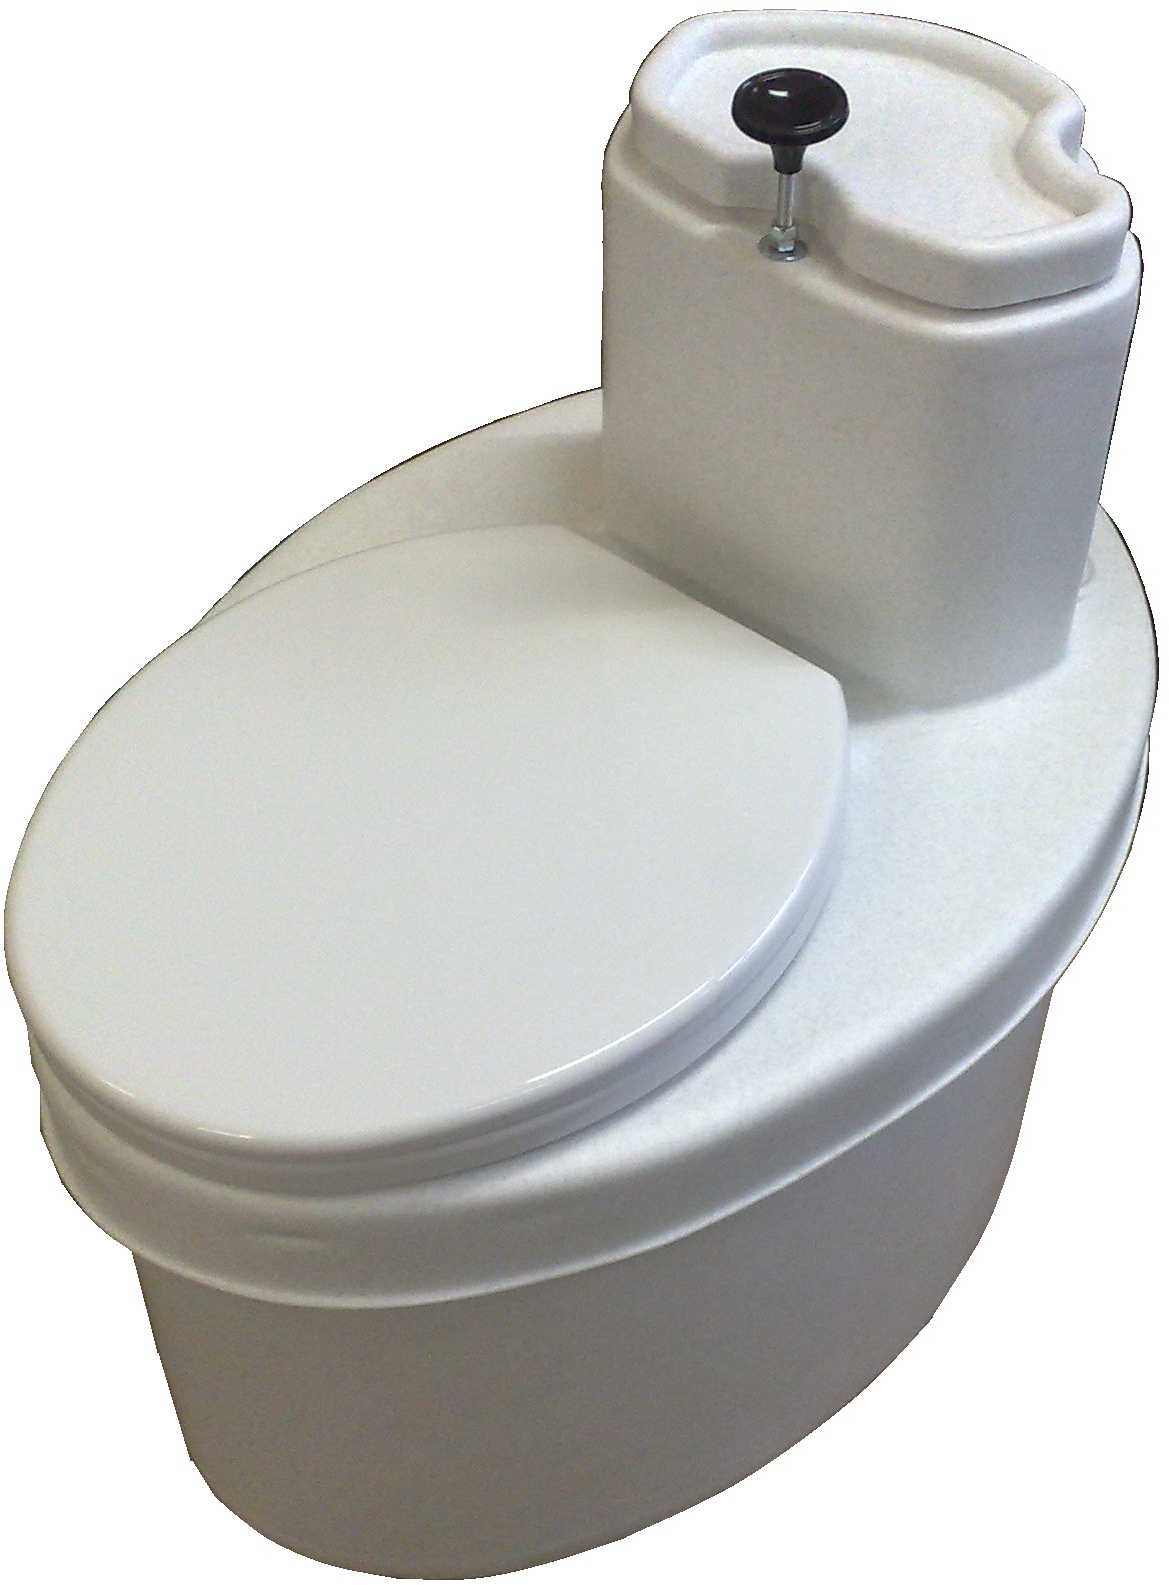 Торфяной туалет (биотуалет) для дачи: компостирующий, емкостный